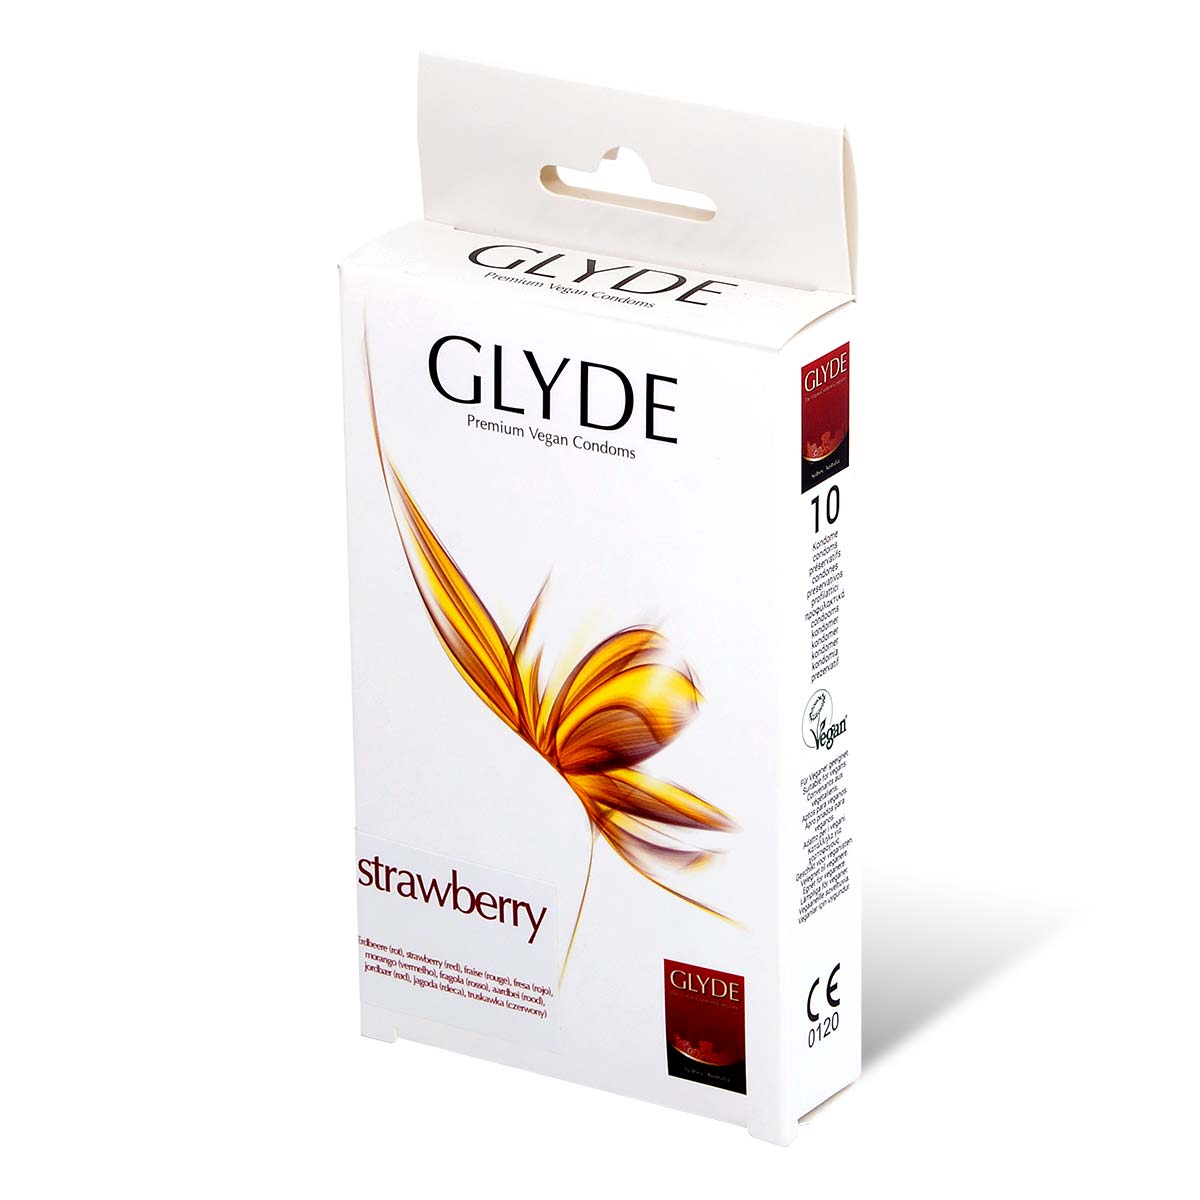 Glyde 格蕾迪 素食主义安全套 草莓香 10 片装 乳胶安全套-p_1